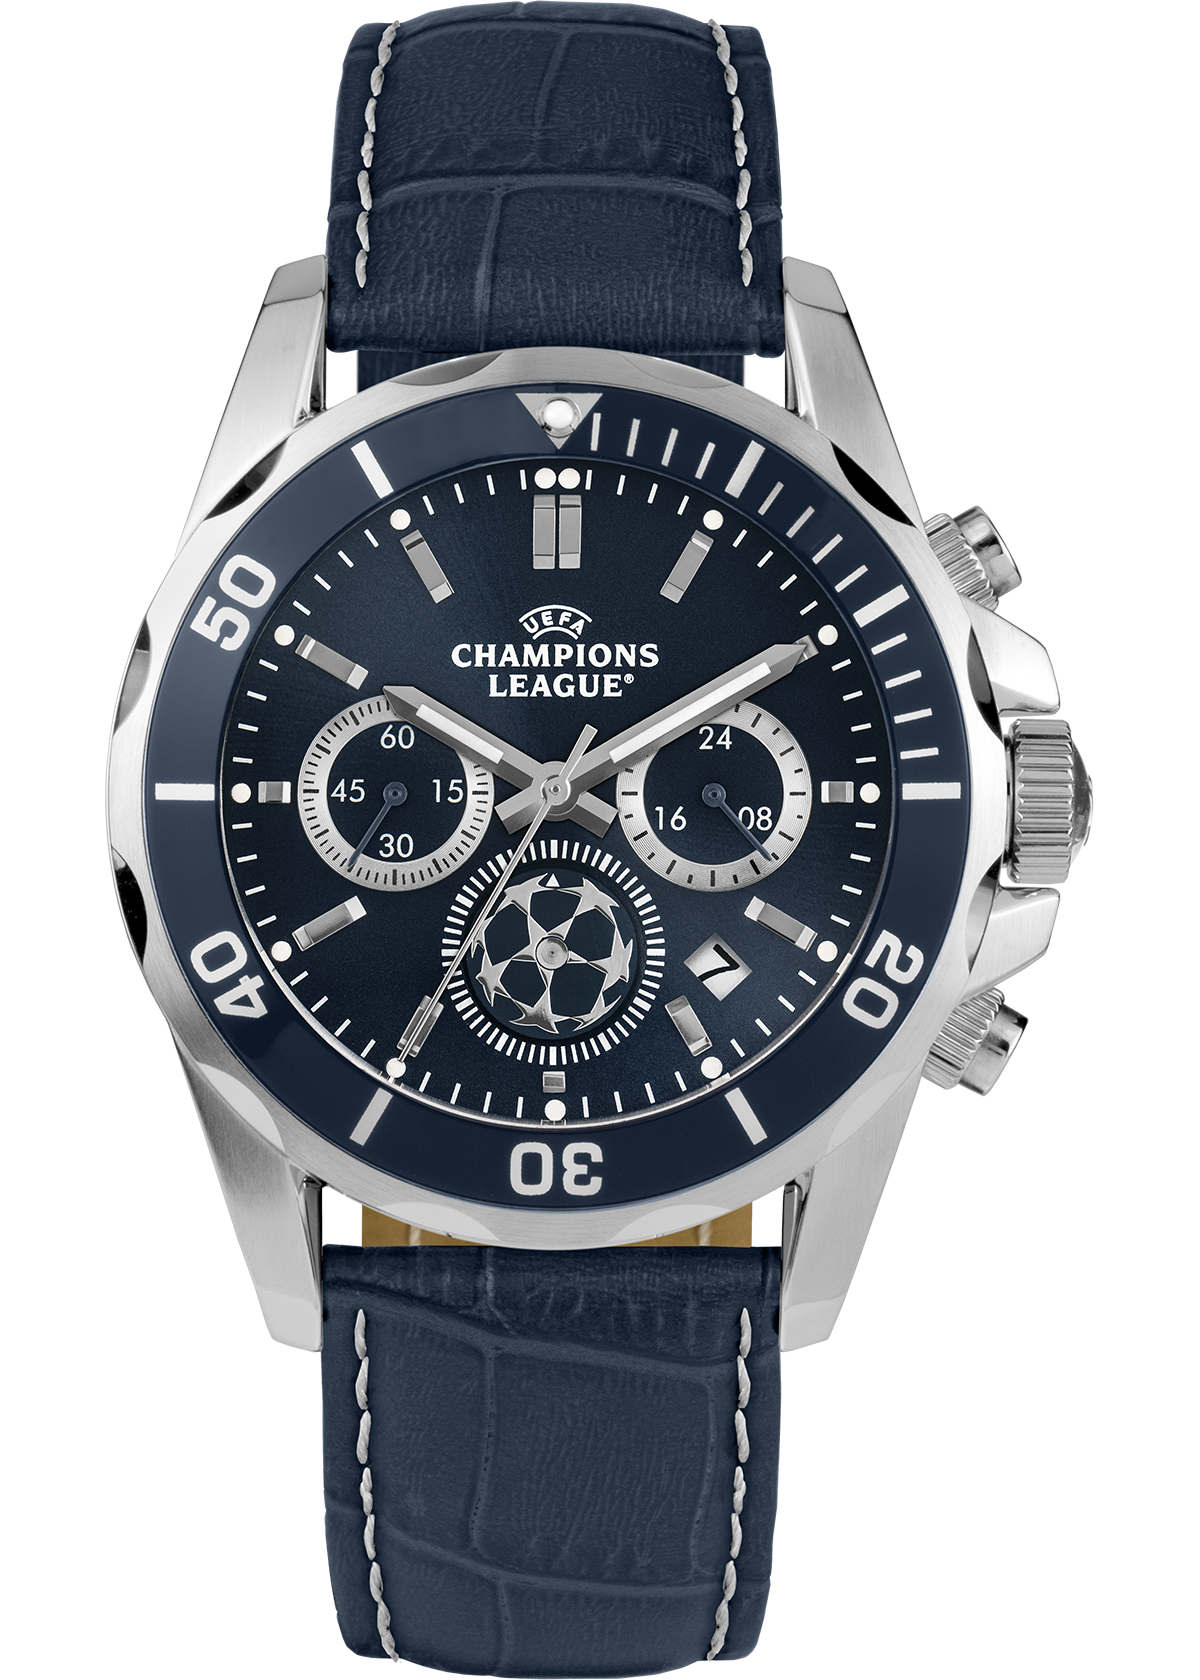 WRISTWATCH, Champion, Spider, quartz. Clocks & Watches - Wristwatches -  Auctionet